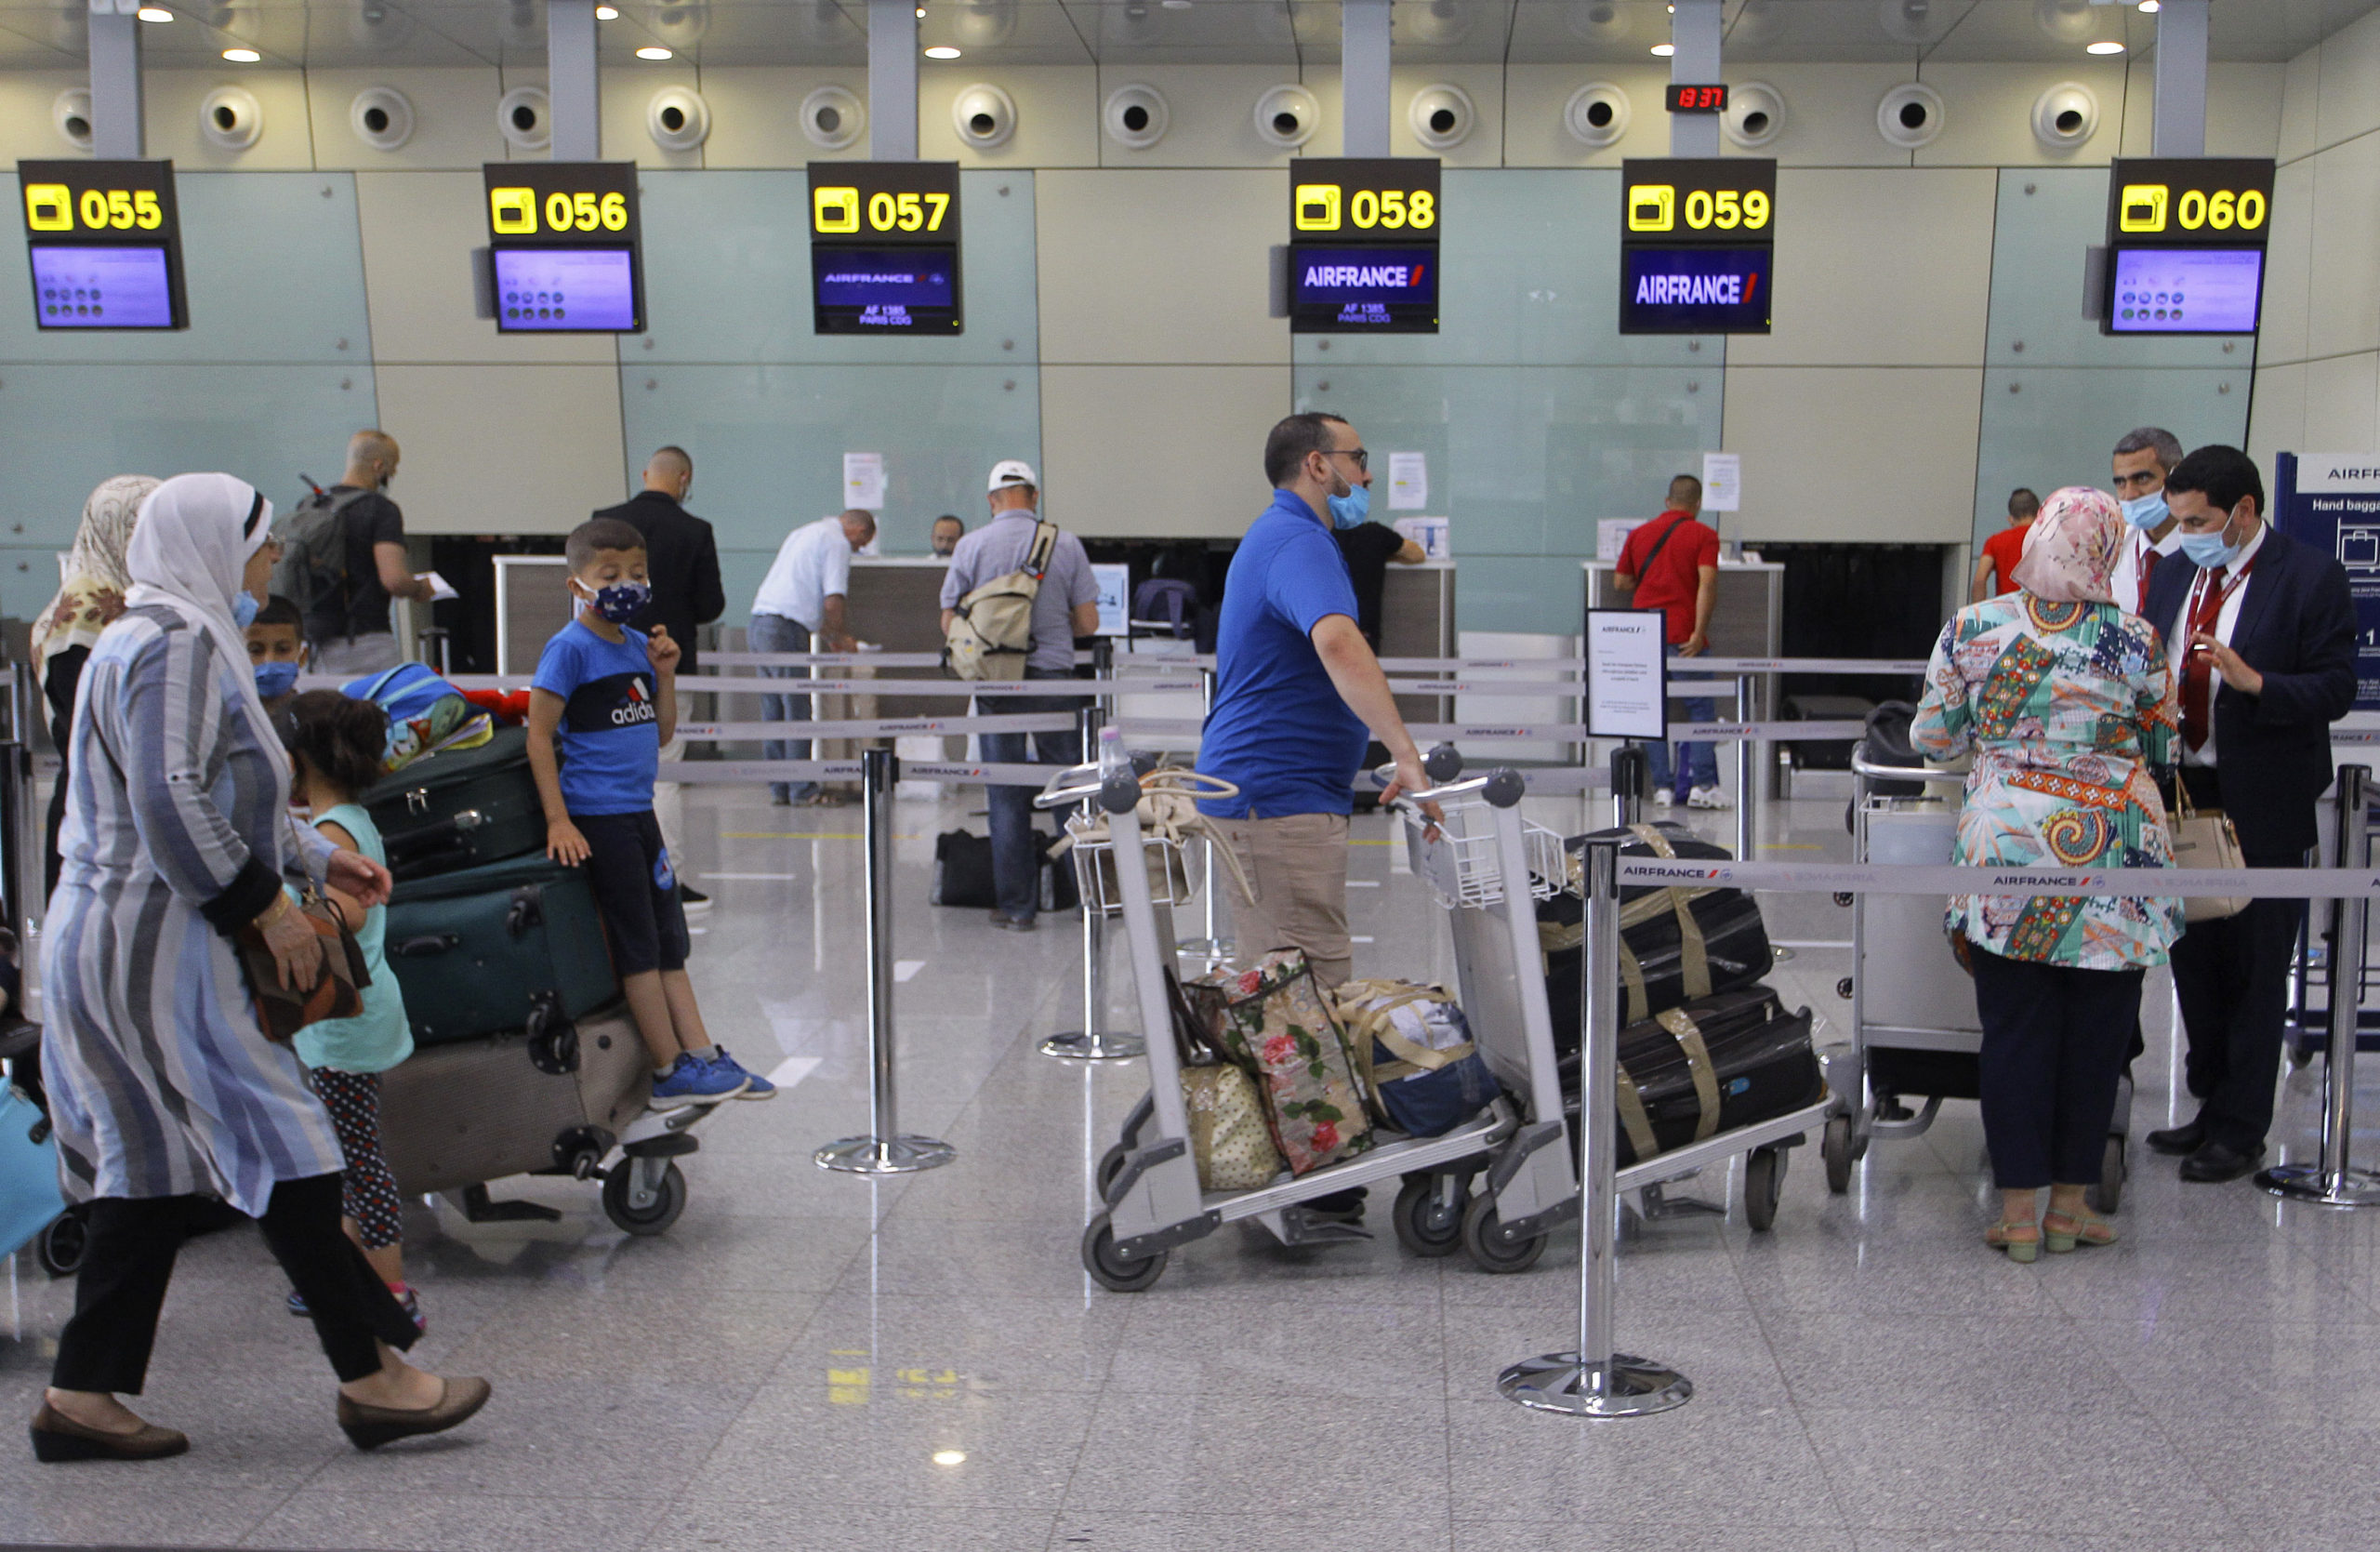 L'été 2021 sera-t-il un cauchemar pour les aéroports ?